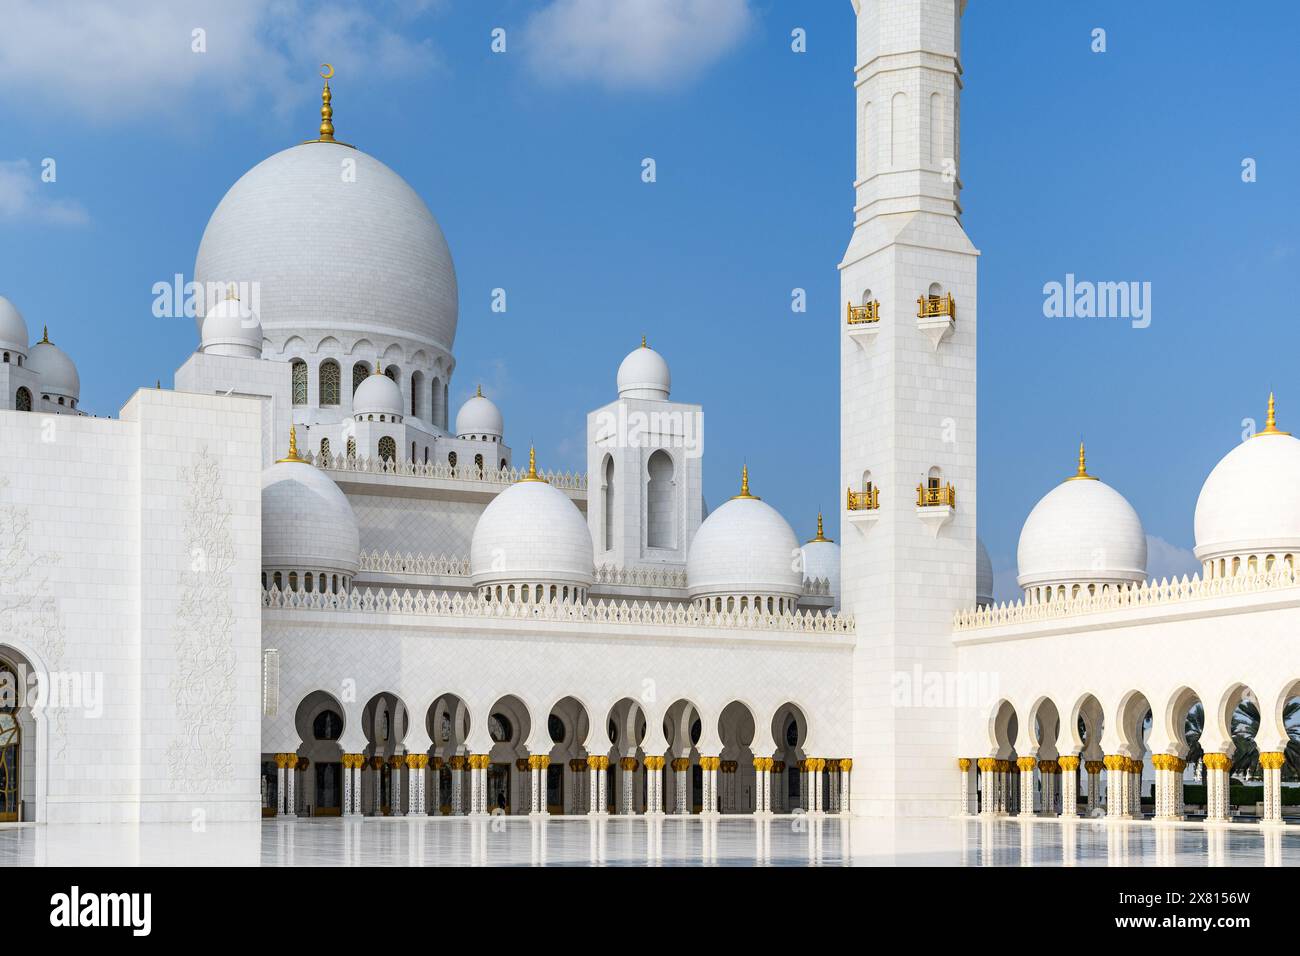 Die majestätische Scheich-Zayed-Moschee in Abu Dhabi, ein Wunder der modernen islamischen Architektur und des Designs. Stockfoto